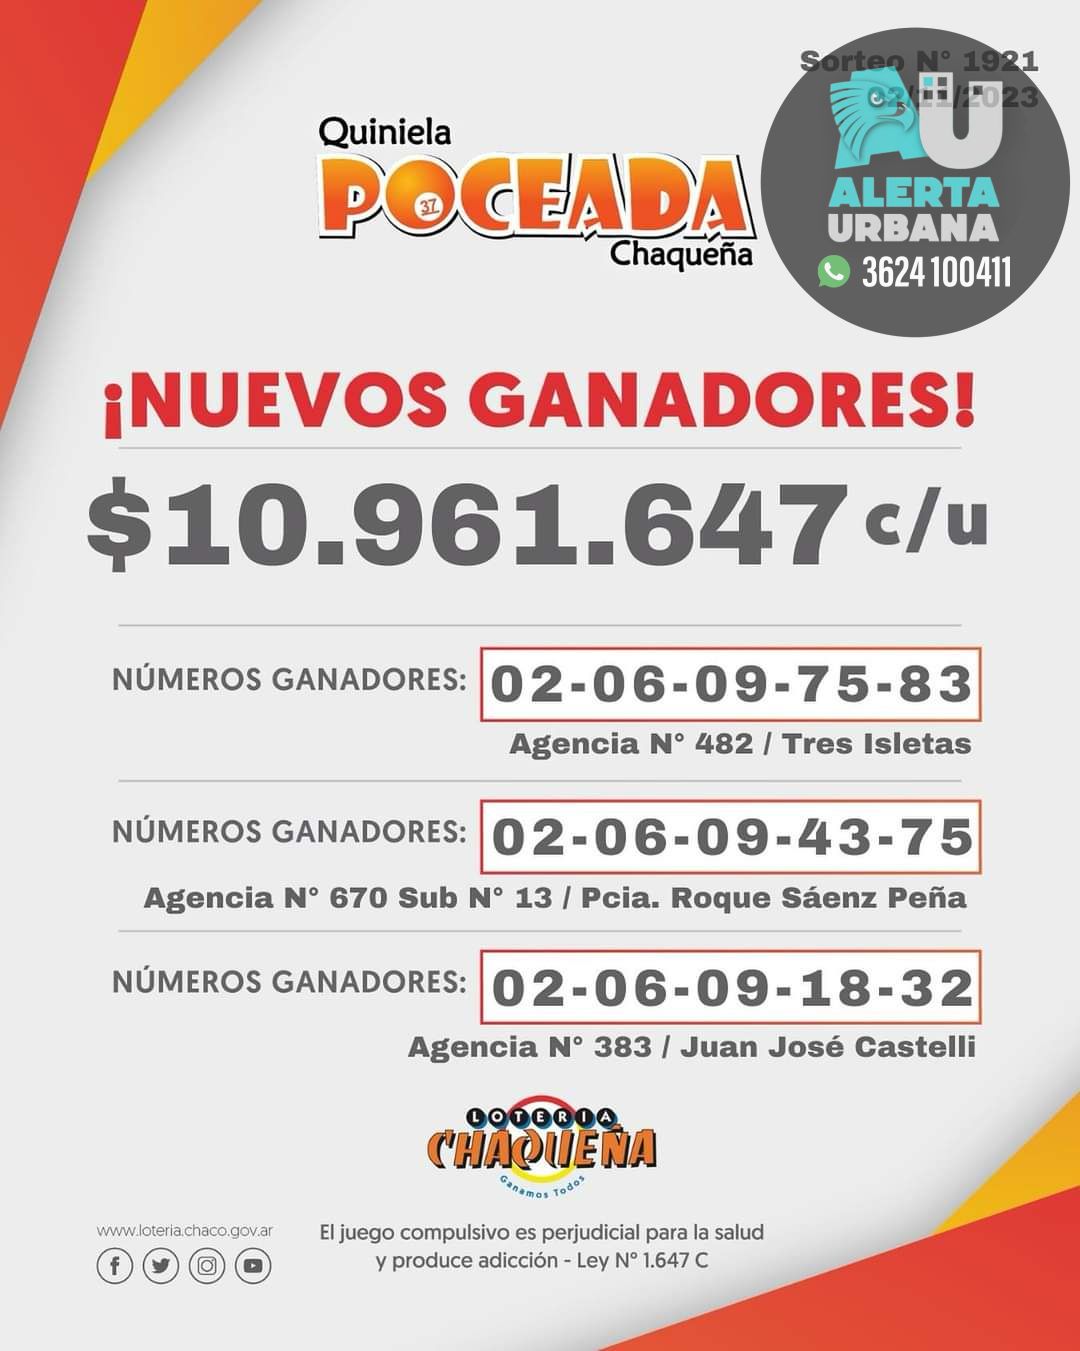 Poceada Chaqueña: tres ganadores en el último sorteo y un nuevo pozo de $11.000.000